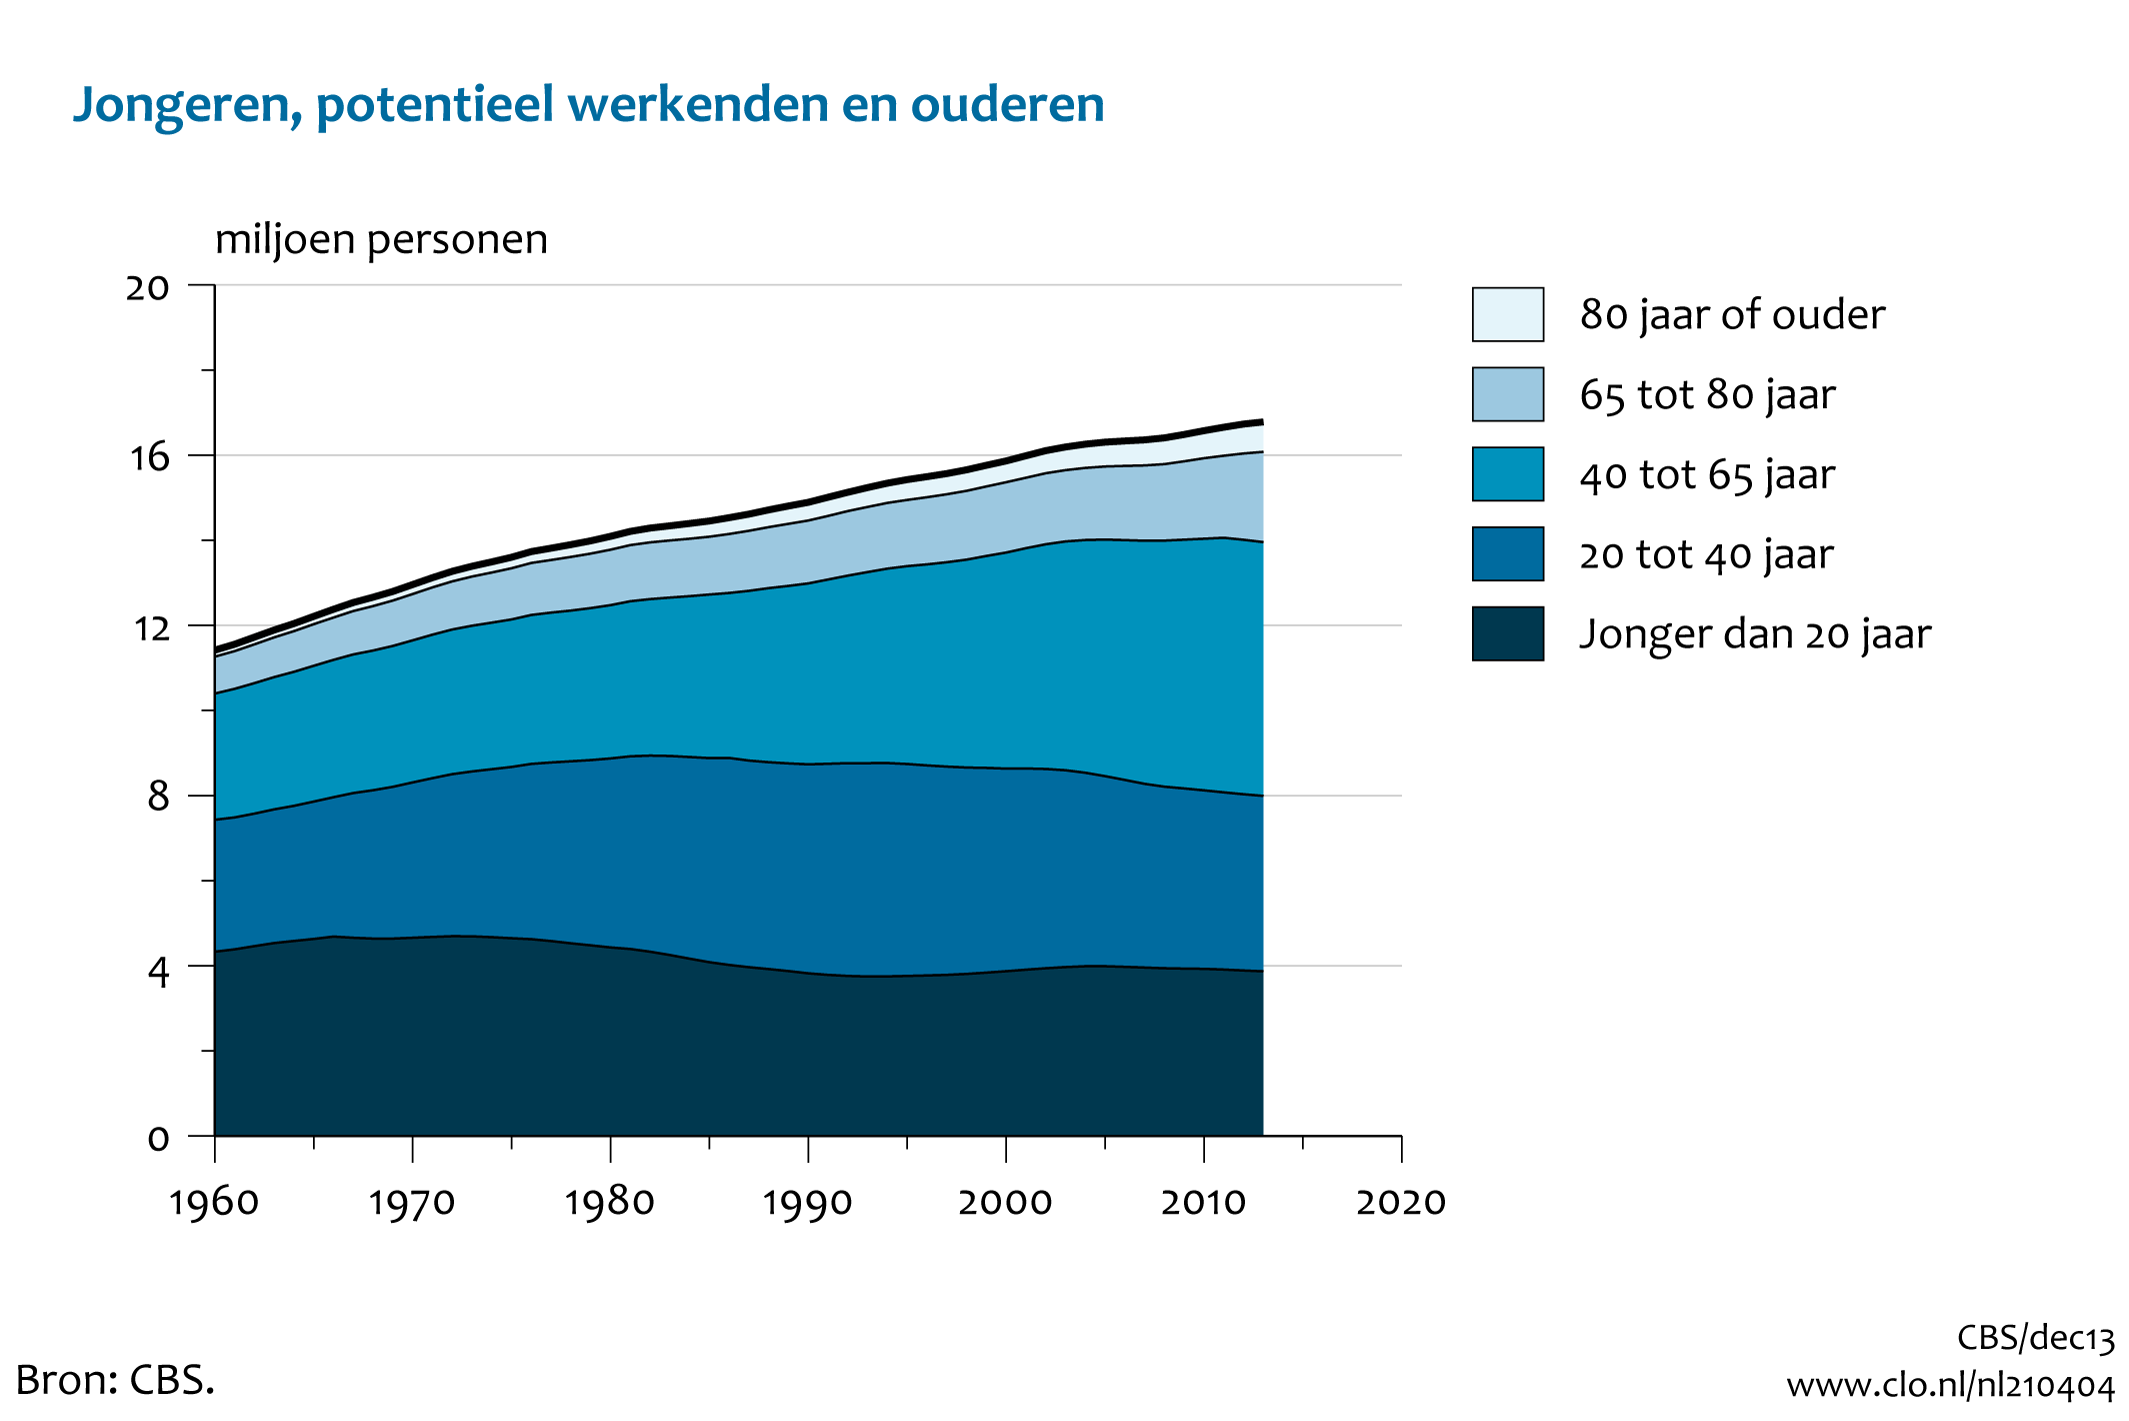 Figuur  Aantal jongeren, potentieel werkenden en ouderen, 1960-2013. In de rest van de tekst wordt deze figuur uitgebreider uitgelegd.